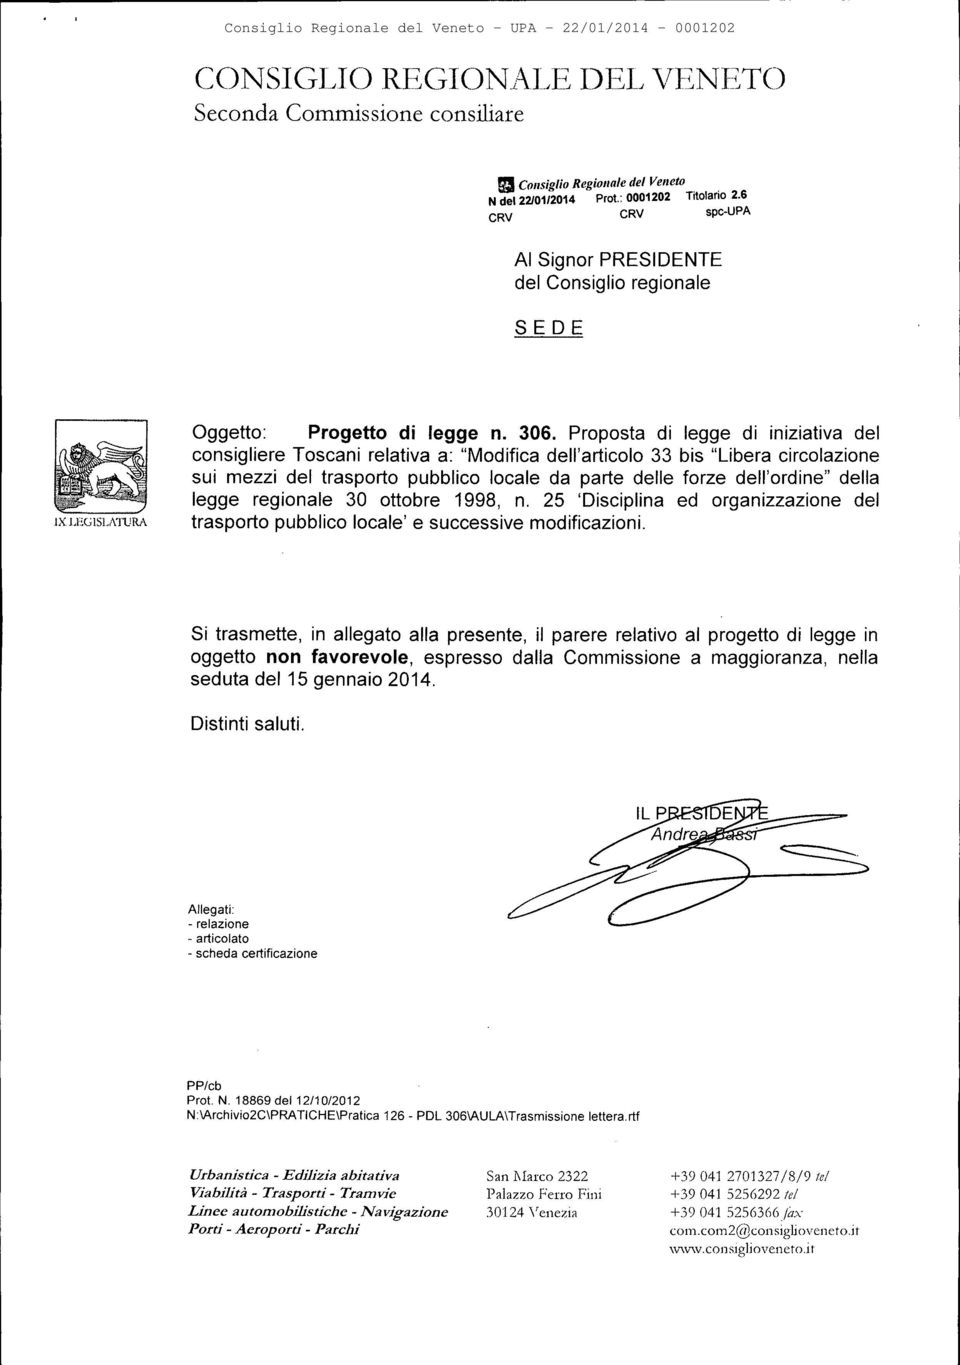 Proposta di legge di iniziativa del consigliere Toscani relativa a: "Modifica dell'articolo 33 bis "Libera circolazione sui mezzi del trasporto pubblico locale da parte delle forze dell'ordine" della